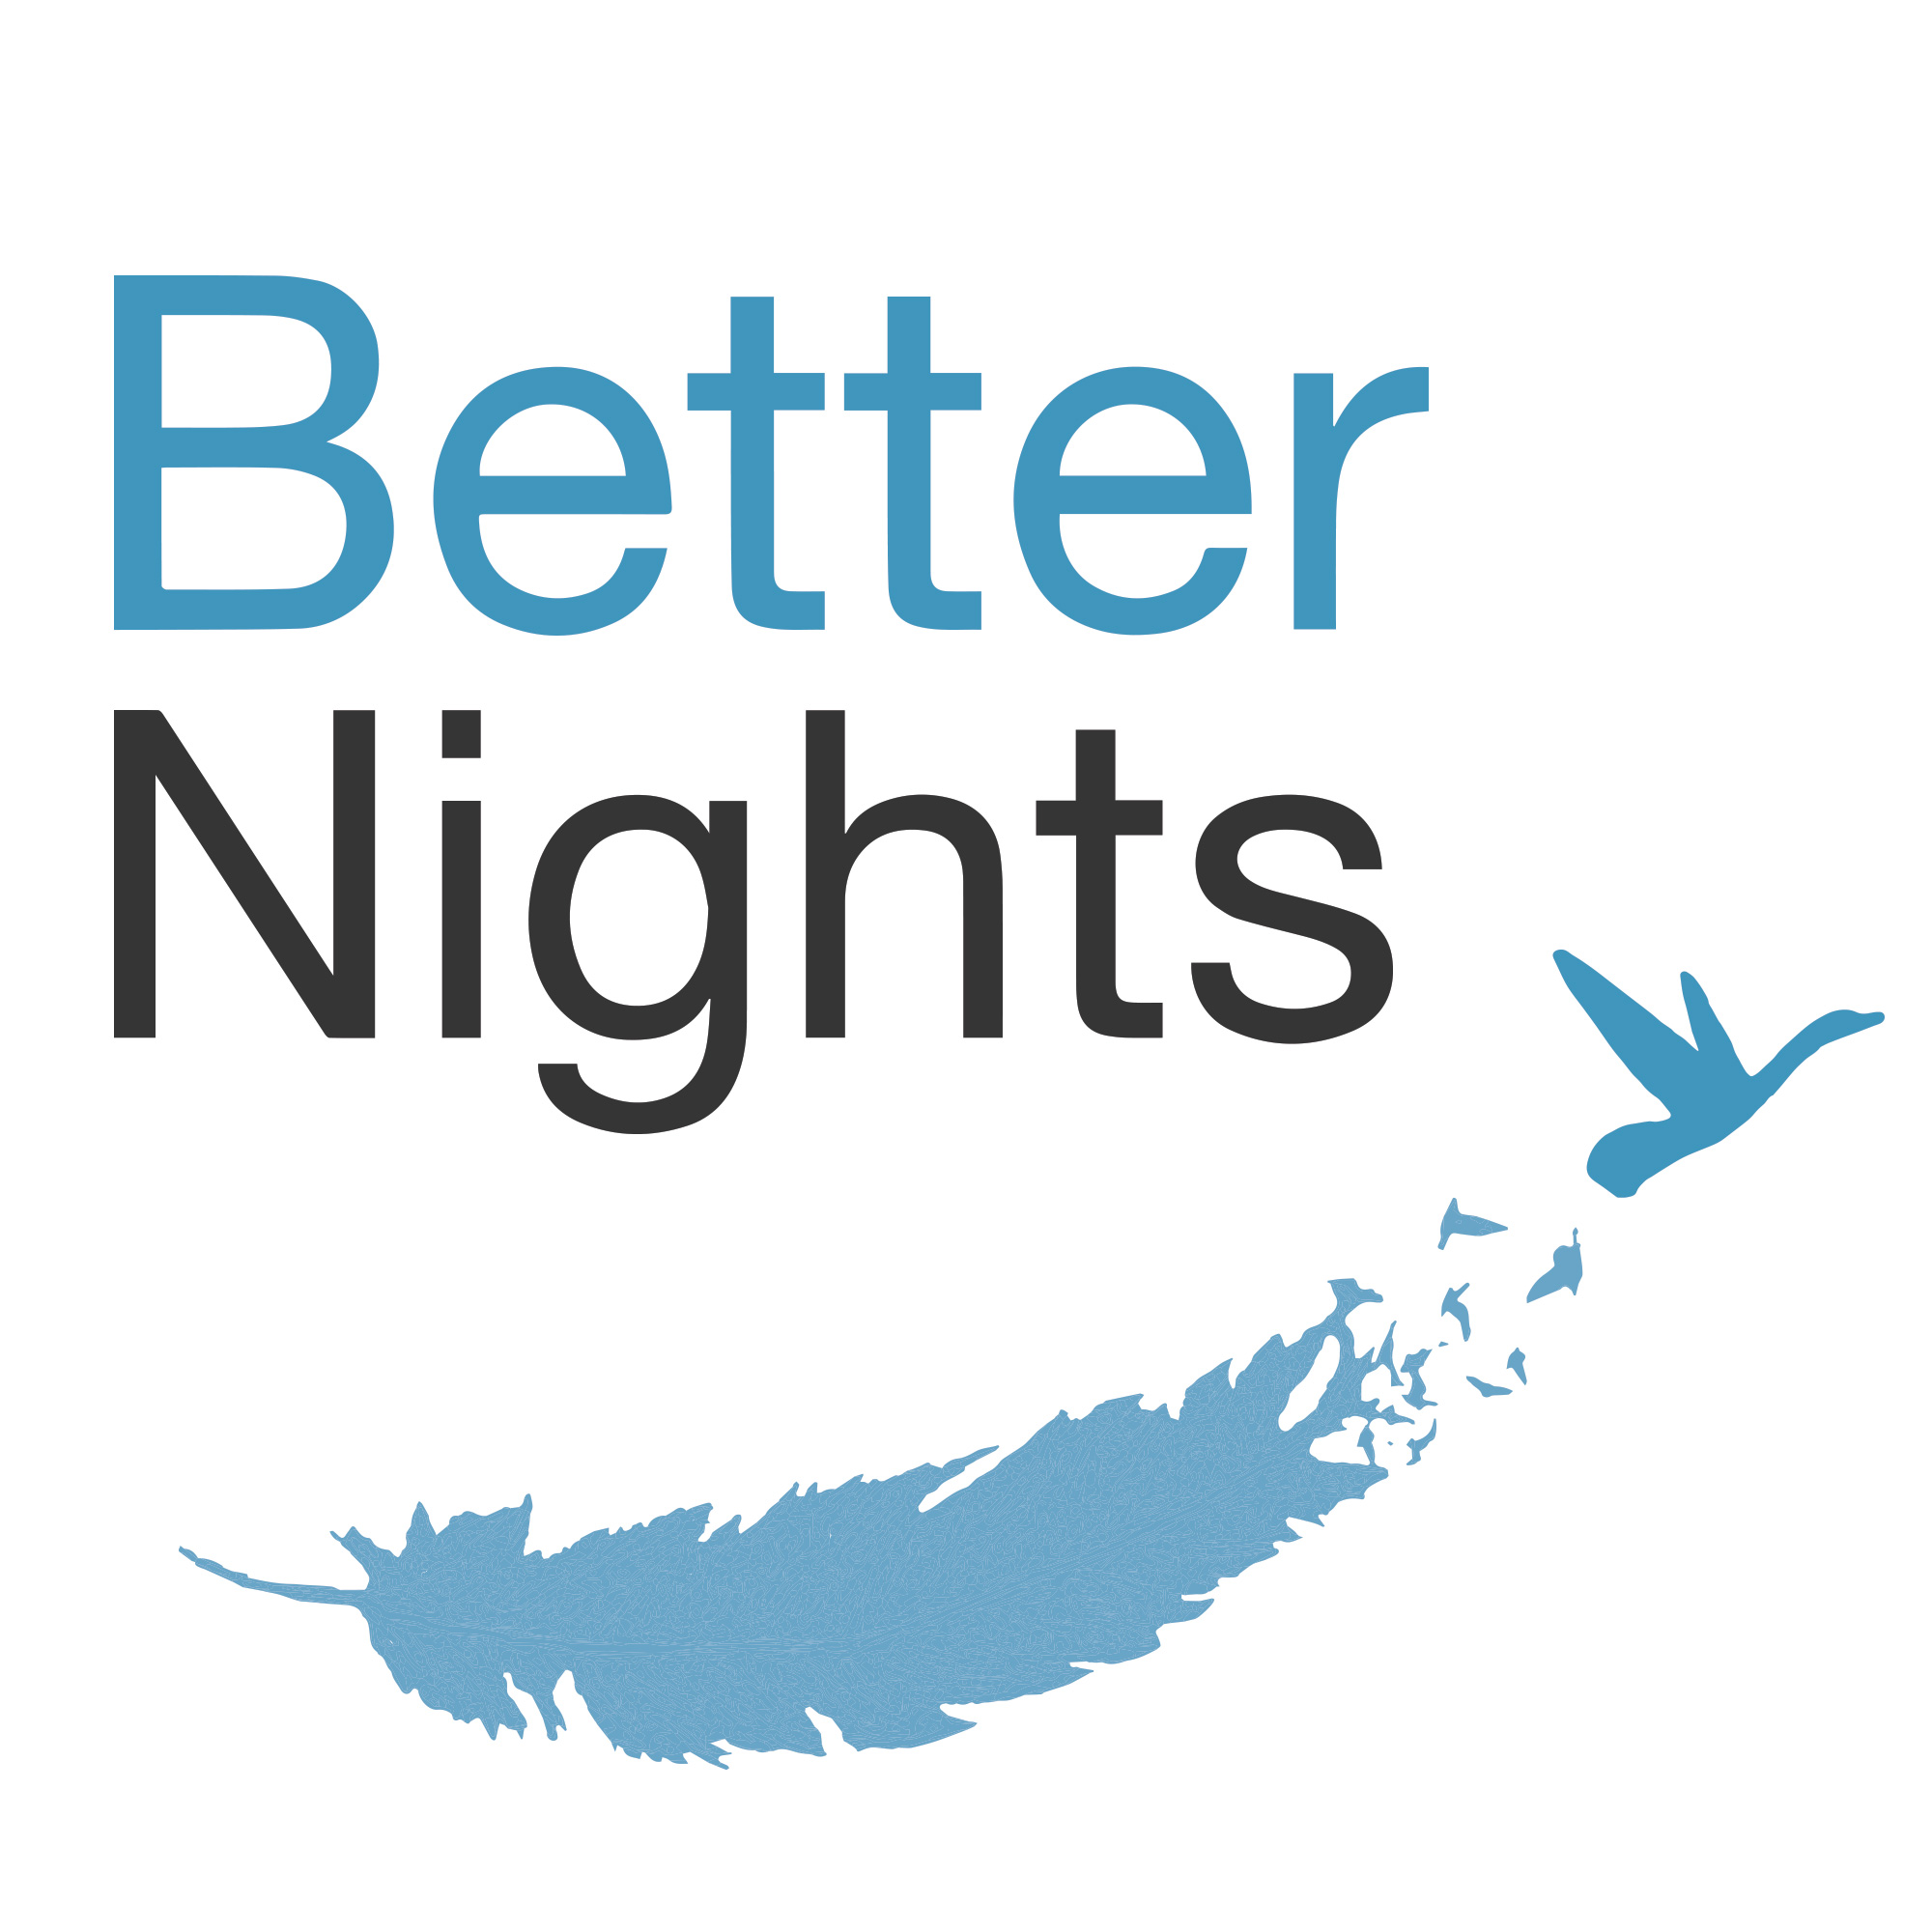 Betternights.nl reviews, beoordelingen en ervaringen